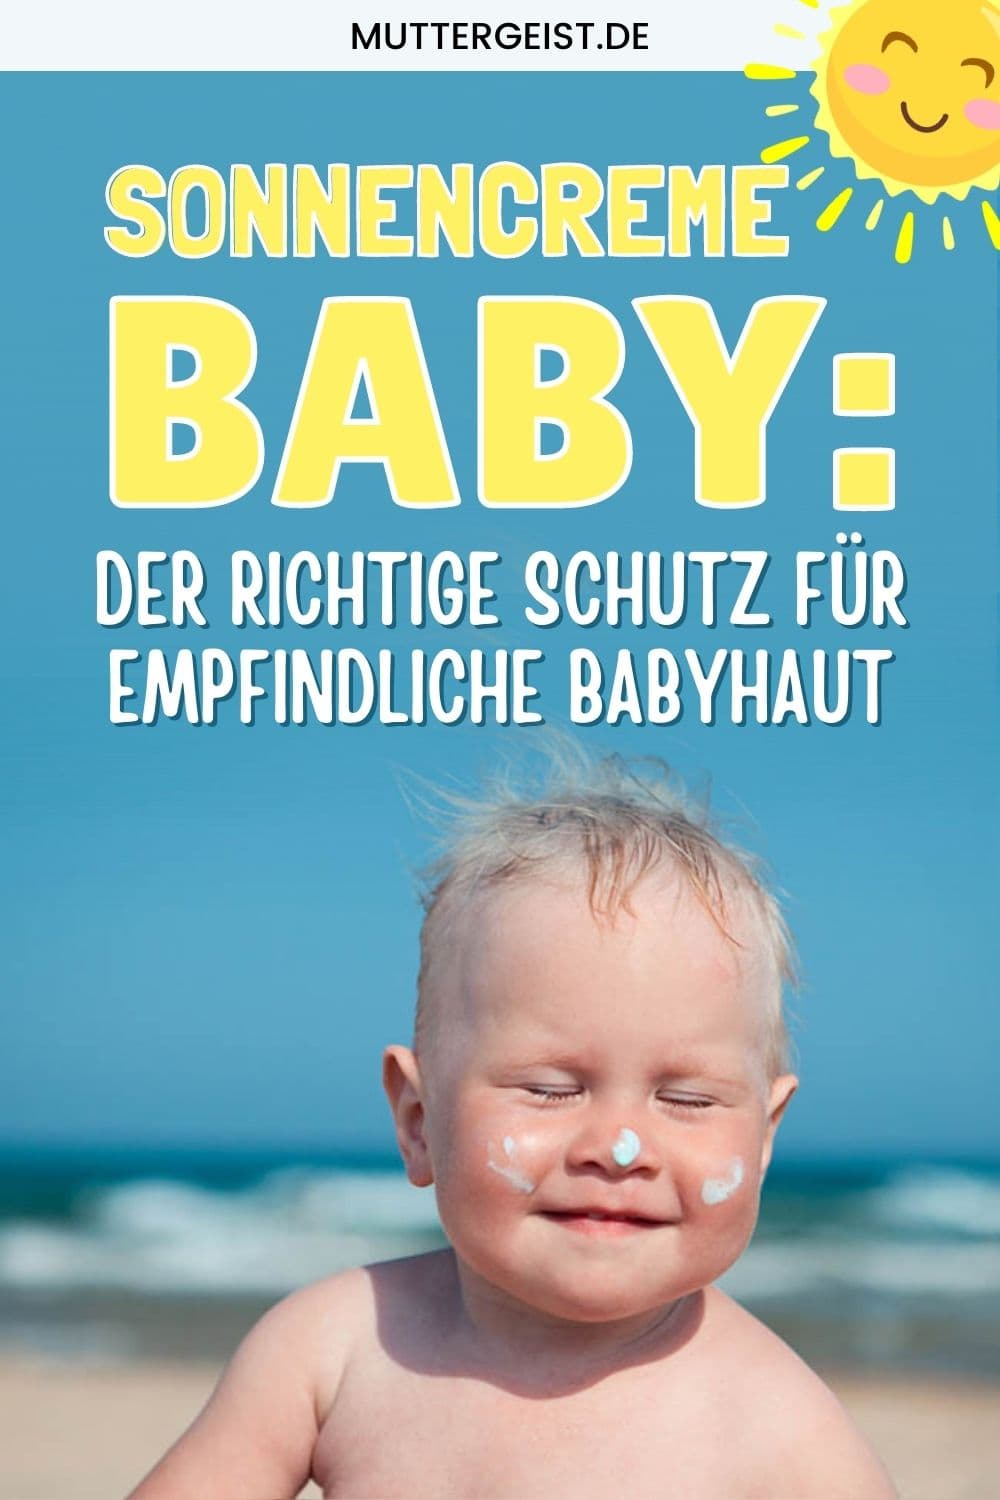 Sonnencreme Baby – Der Richtige Schutz Für Empfindliche Babyhaut Pinterest